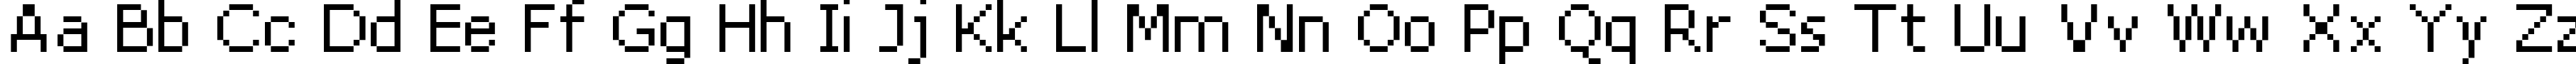 Пример написания английского алфавита шрифтом DPix_8pt